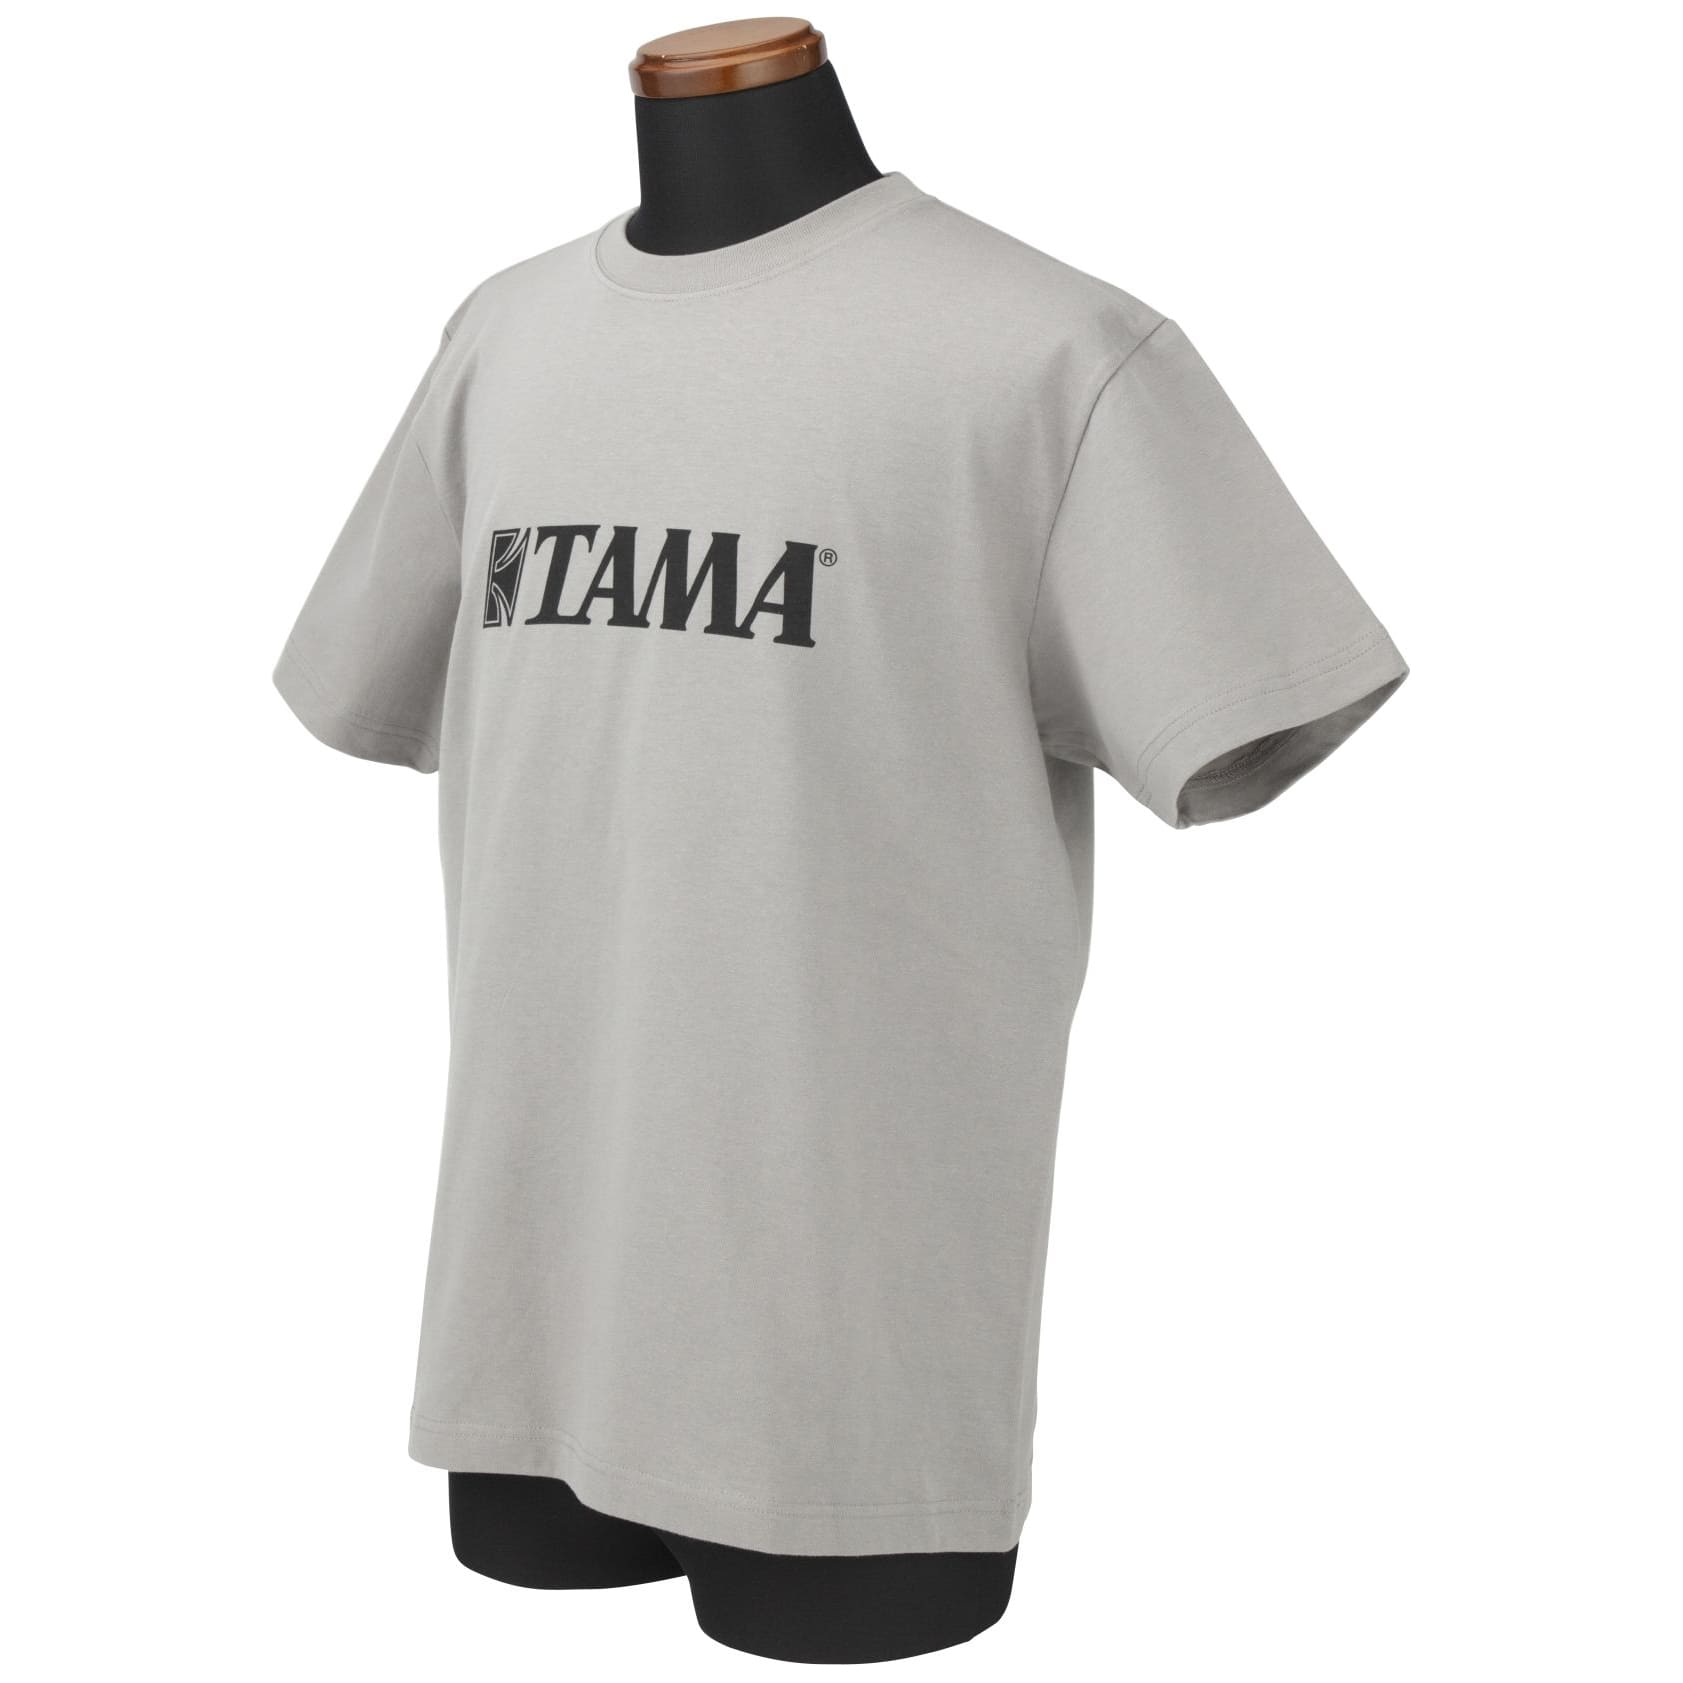 Tama TAMT005M T-Shirt Black Logo - grau - M